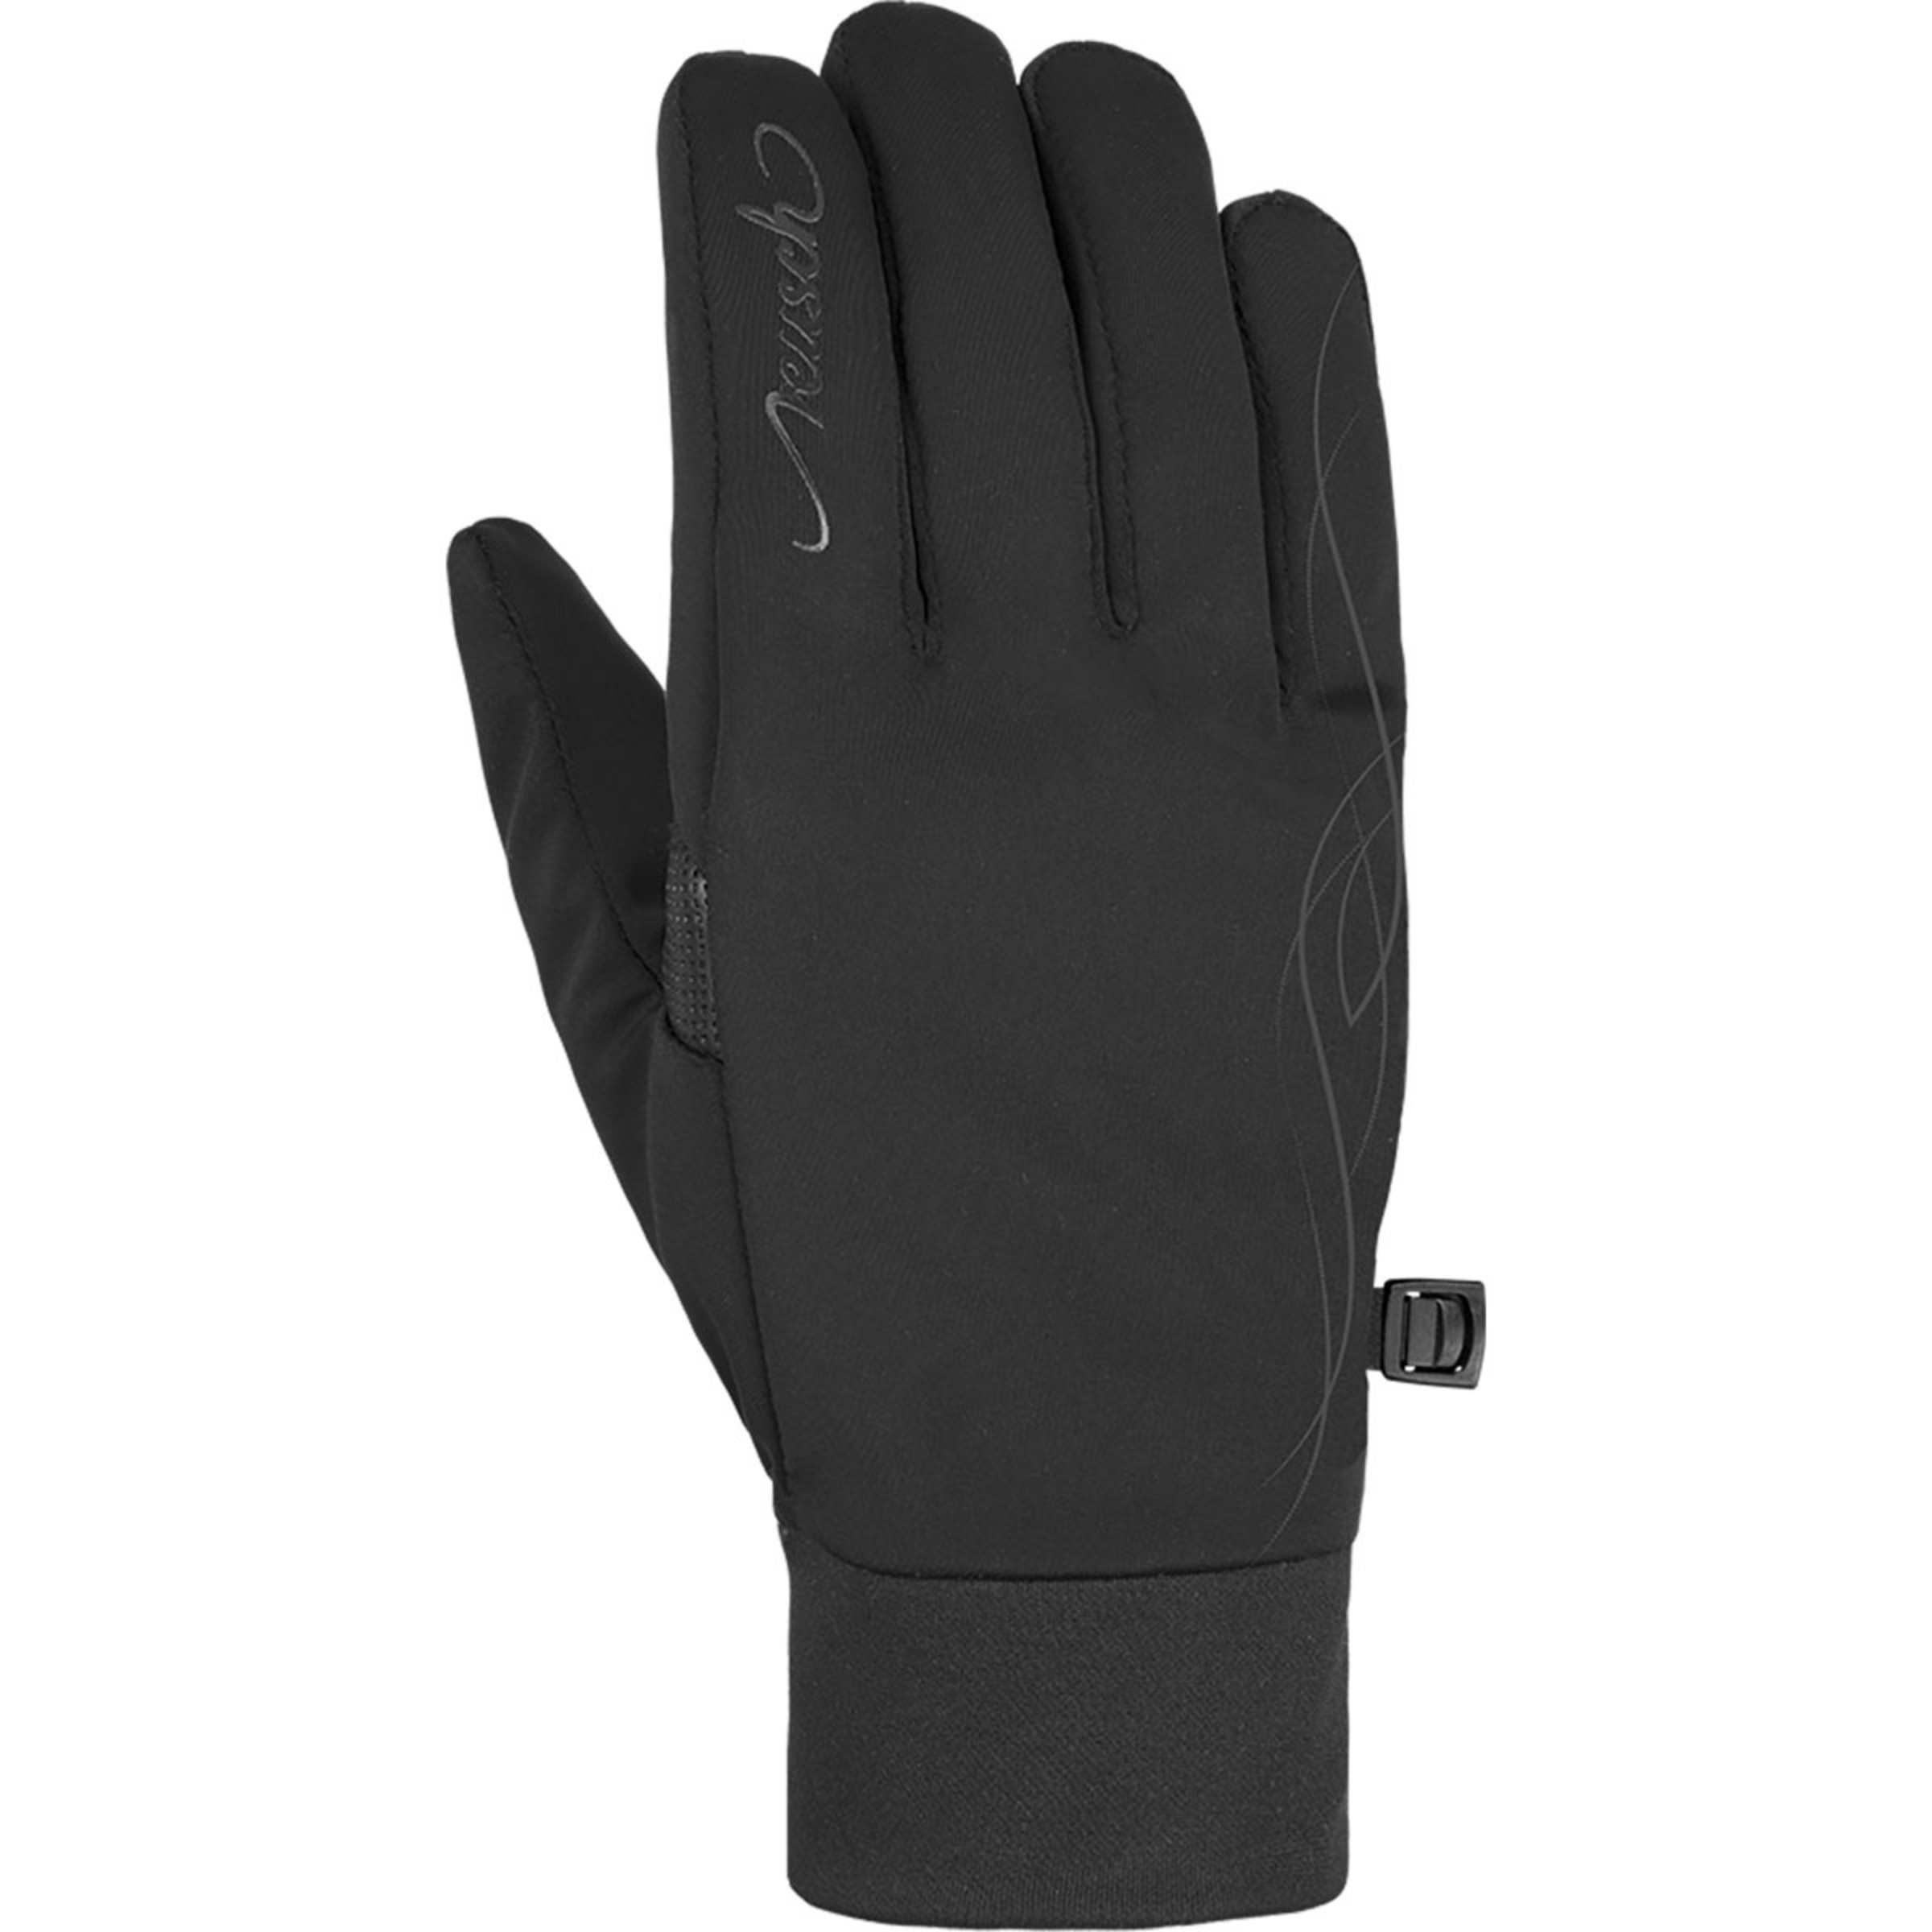 Reusch Damen Saskia Bergzeit kaufen Touch-Tec Handschuhe 